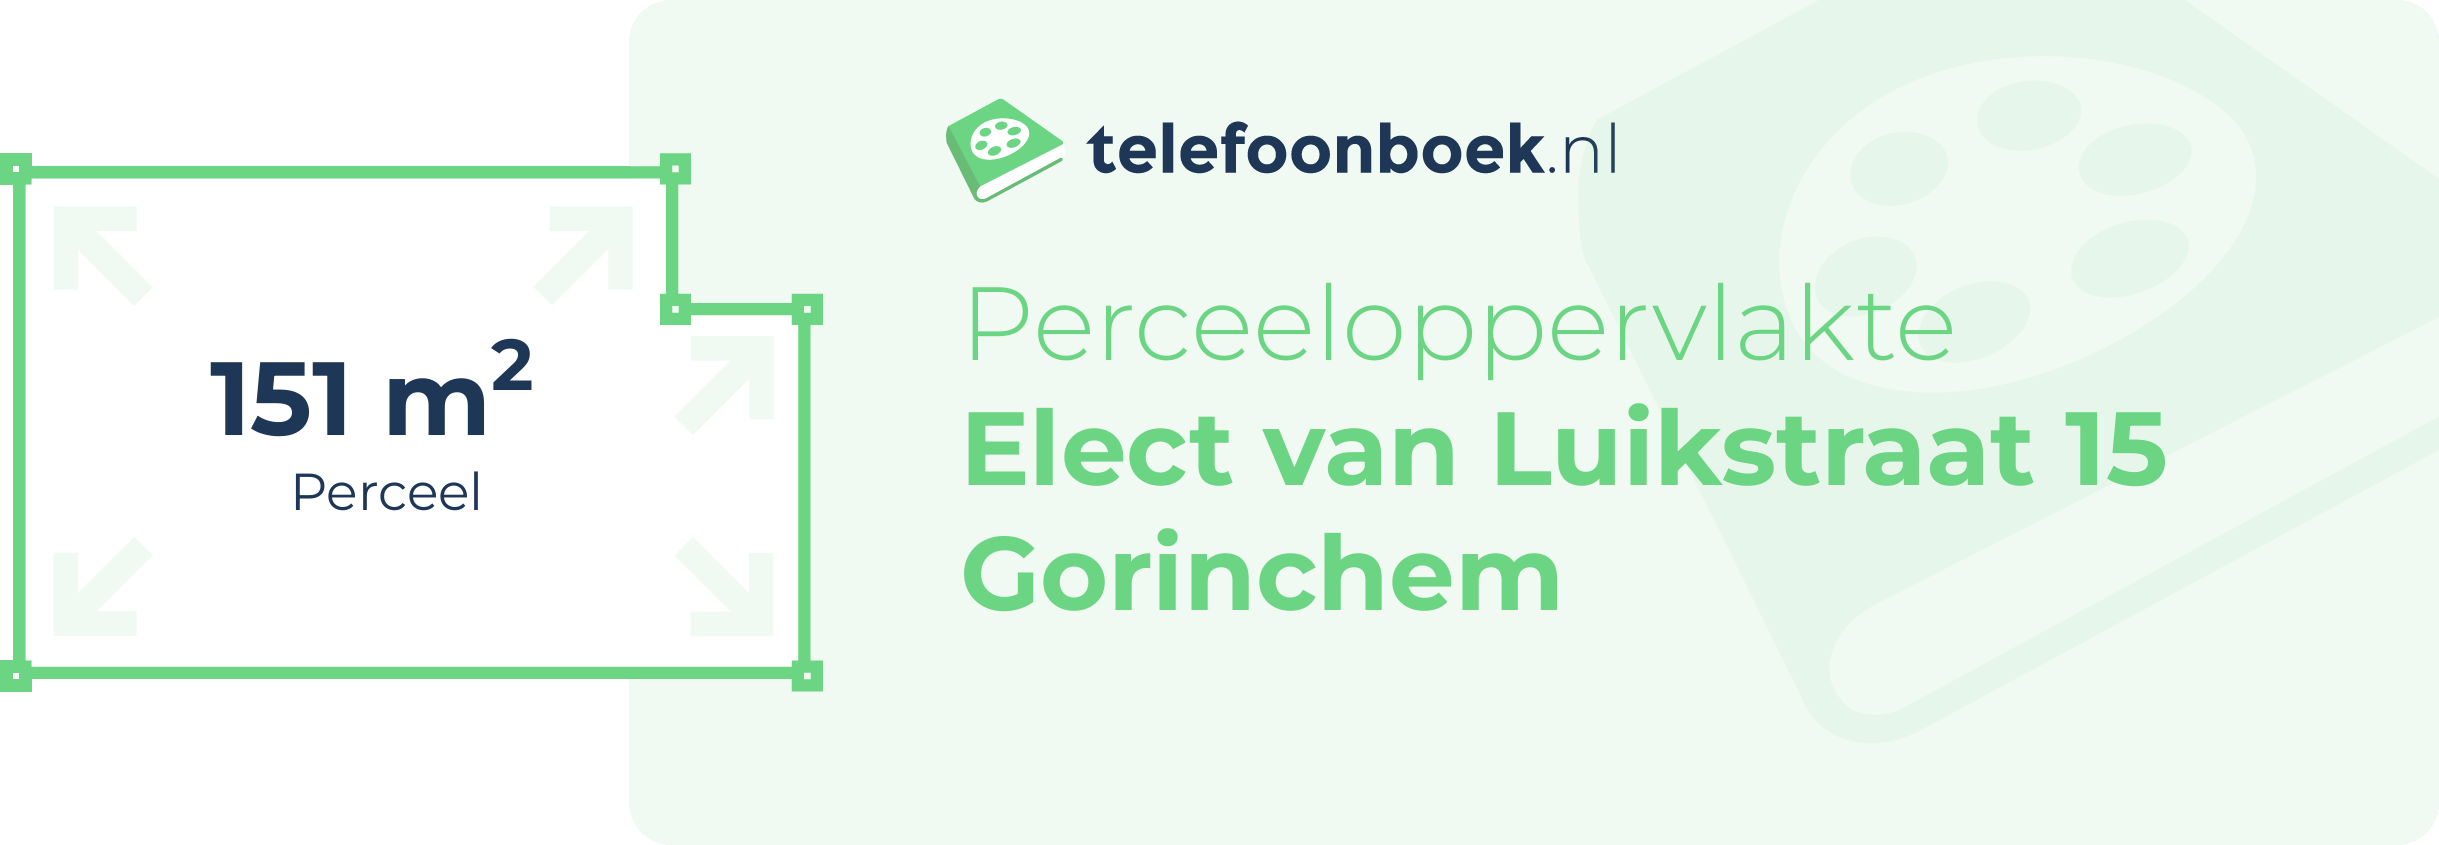 Perceeloppervlakte Elect Van Luikstraat 15 Gorinchem